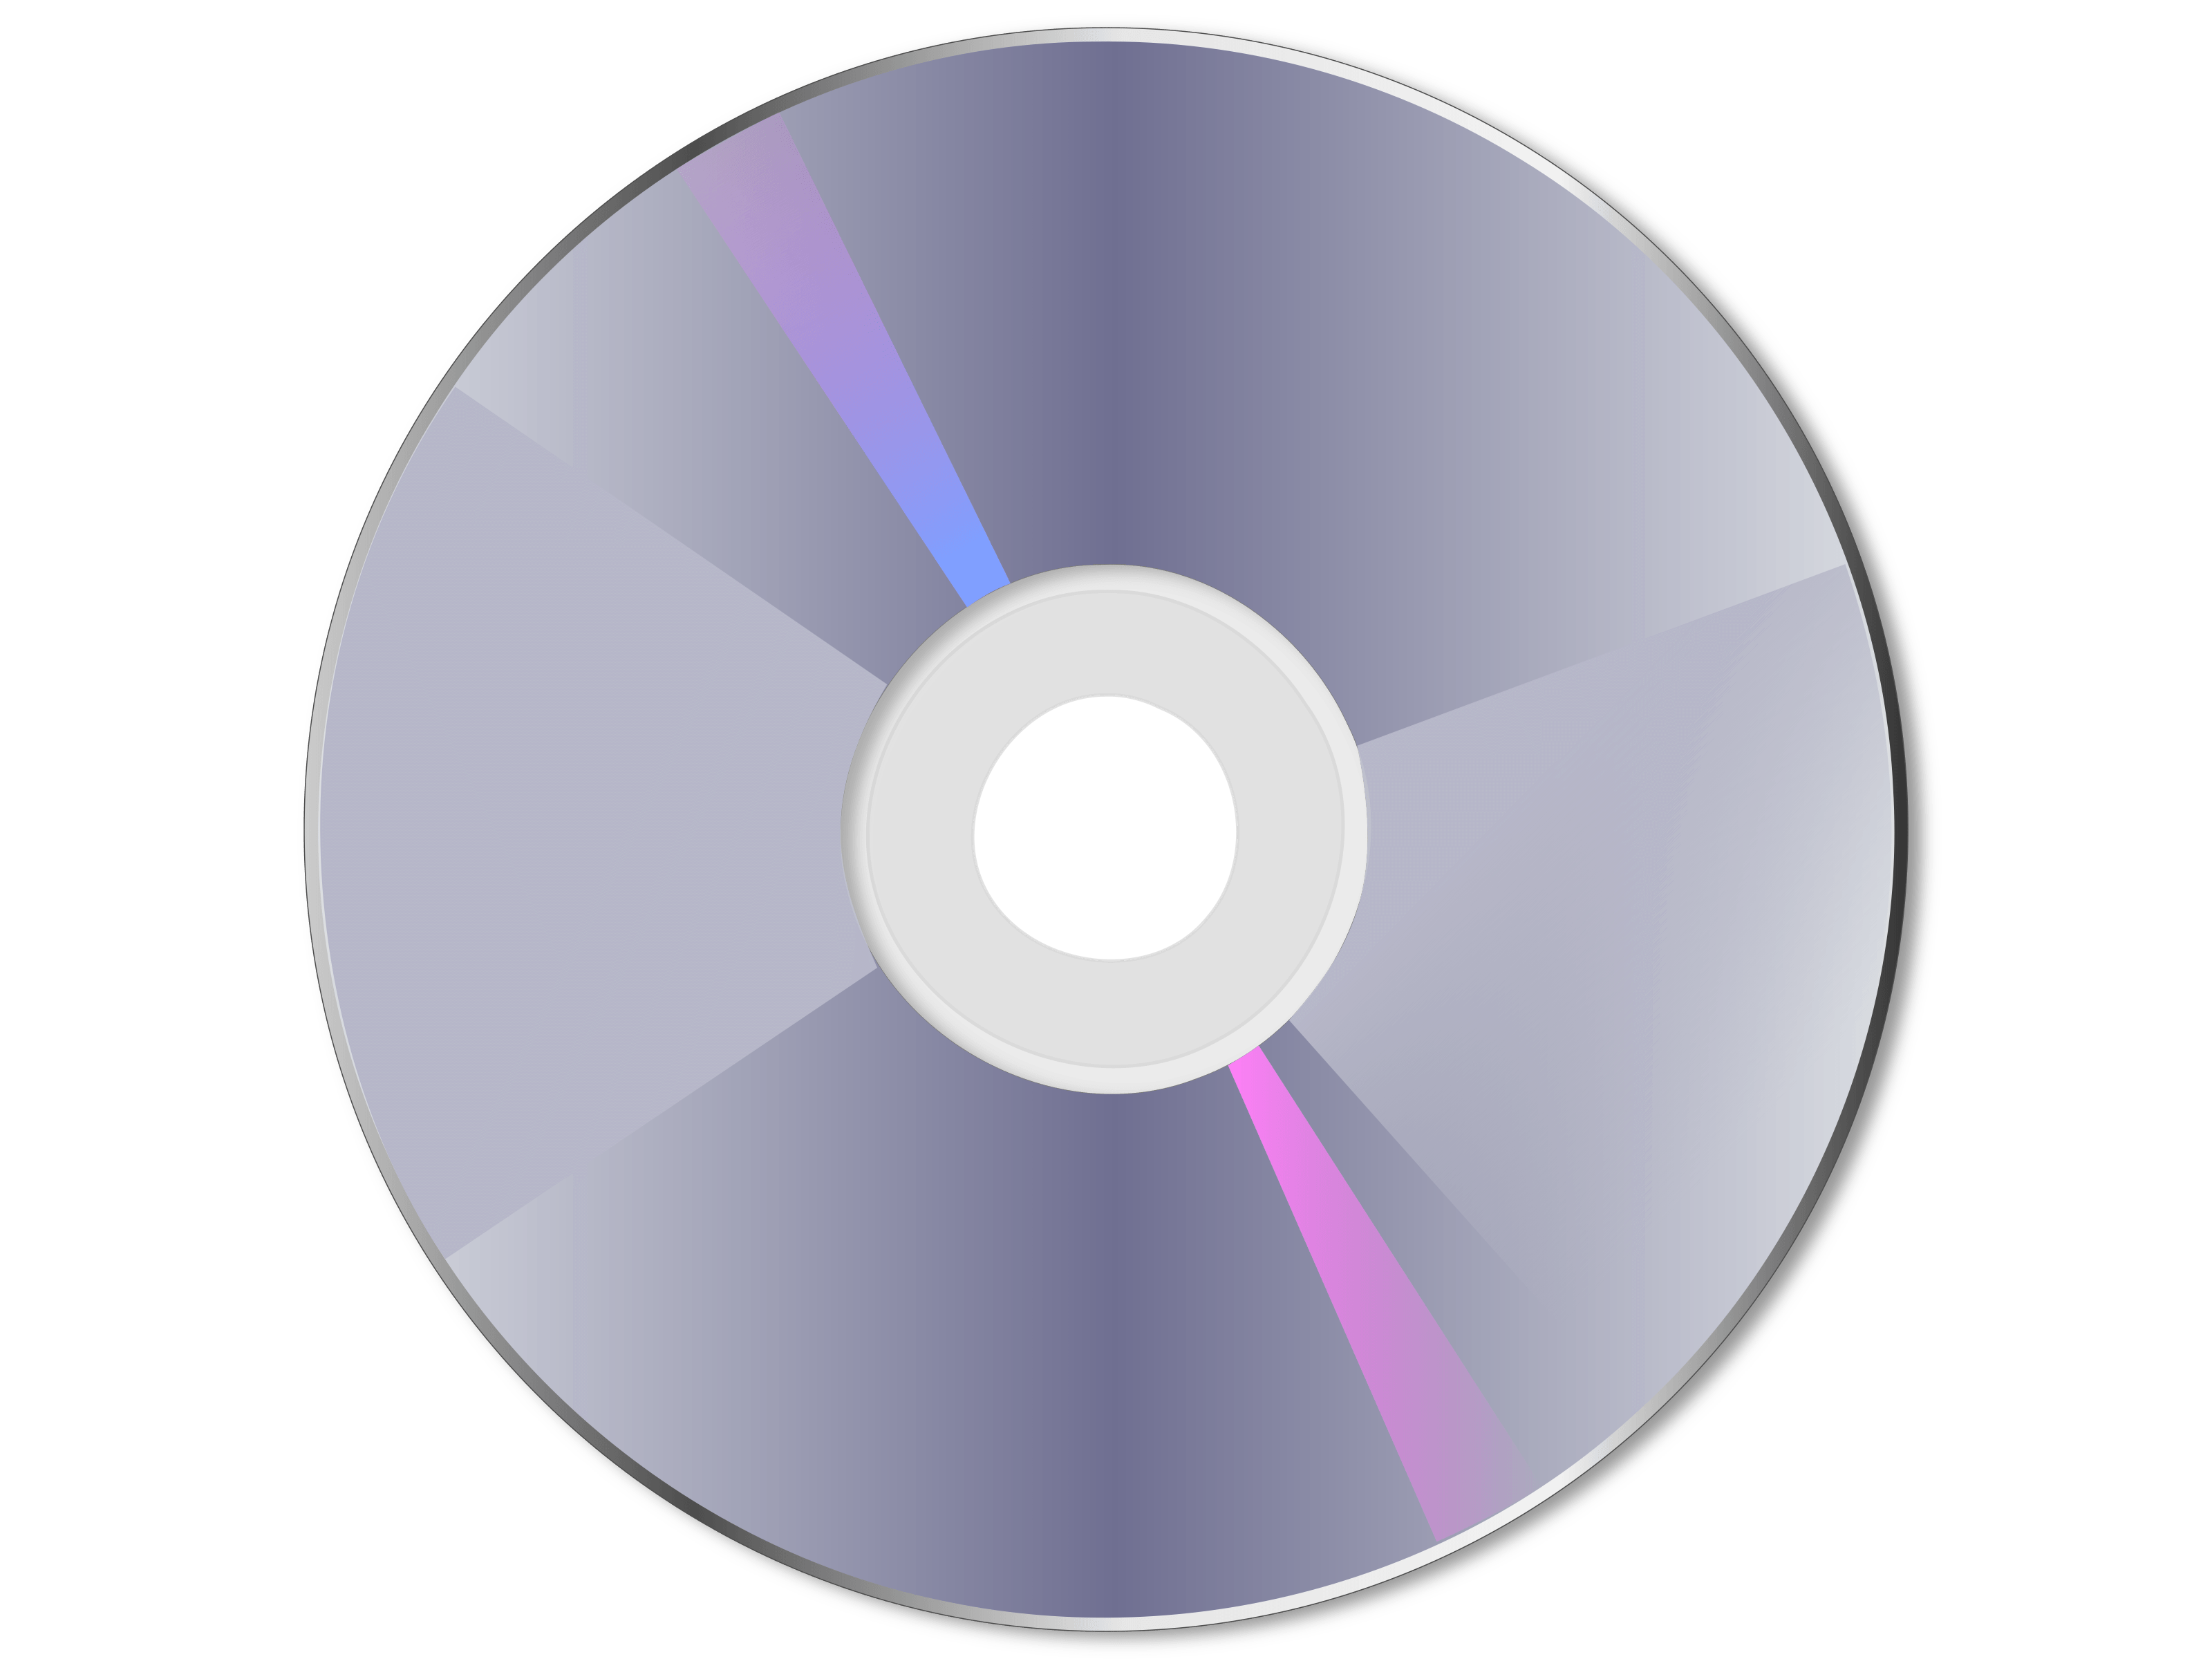 Cd user. CD - Compact Disk (компакт диск). CD (Compact Disc) — оптический носитель. CD (Compact Disk ROM) DVD (Digital versatile Disc). DVD-диски (DVD – Digital versatile Disk, цифровой универсальный диск),.